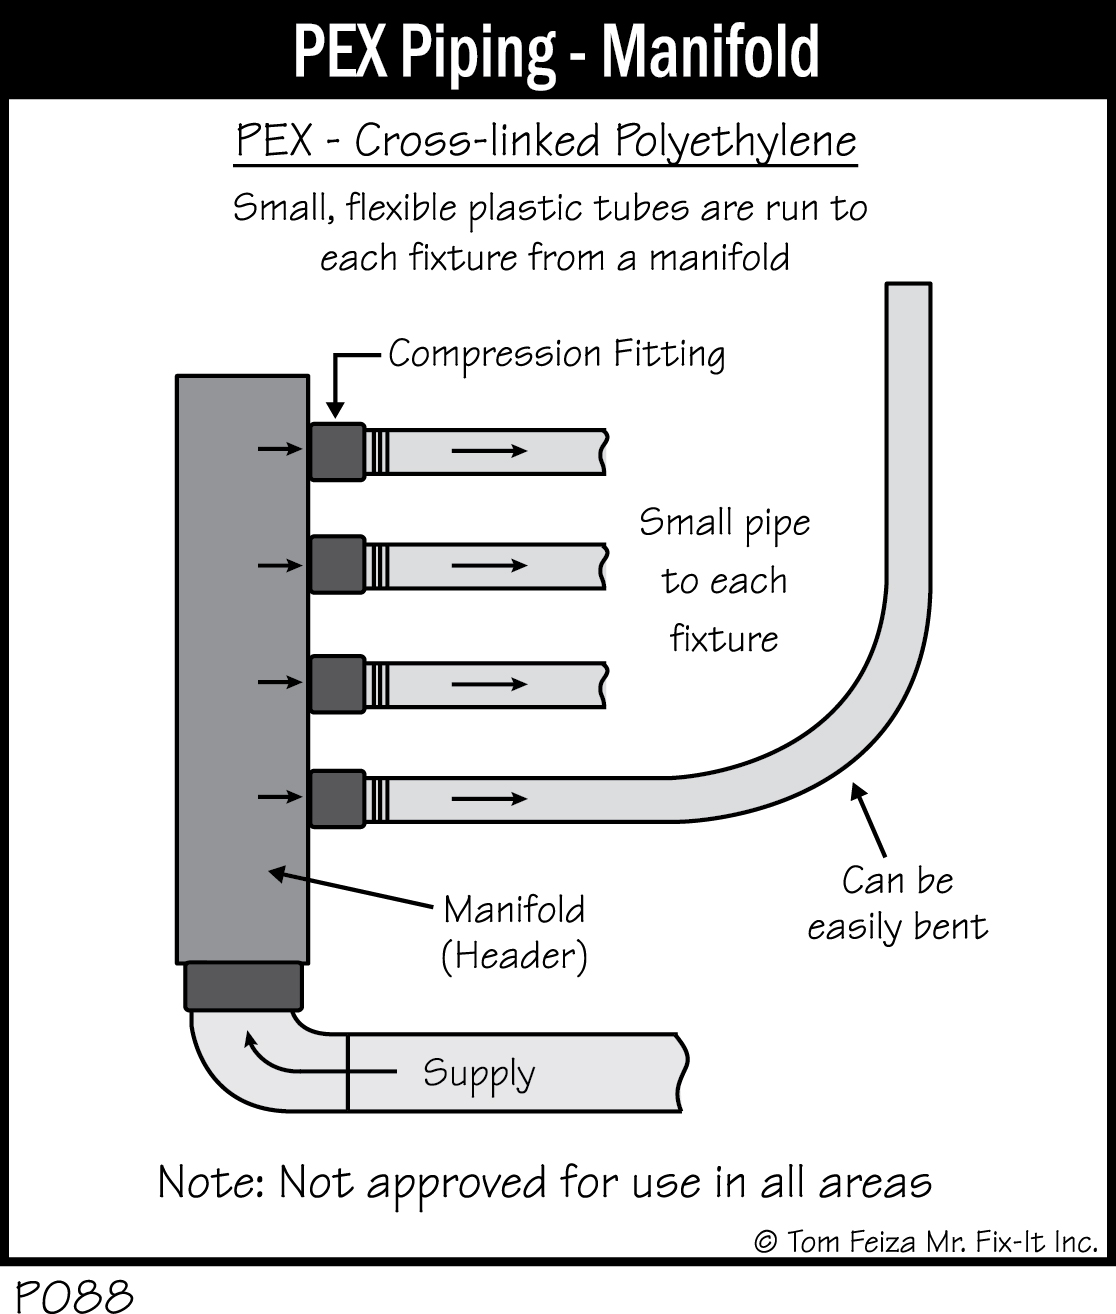 P088 - PEX Piping - Manifold